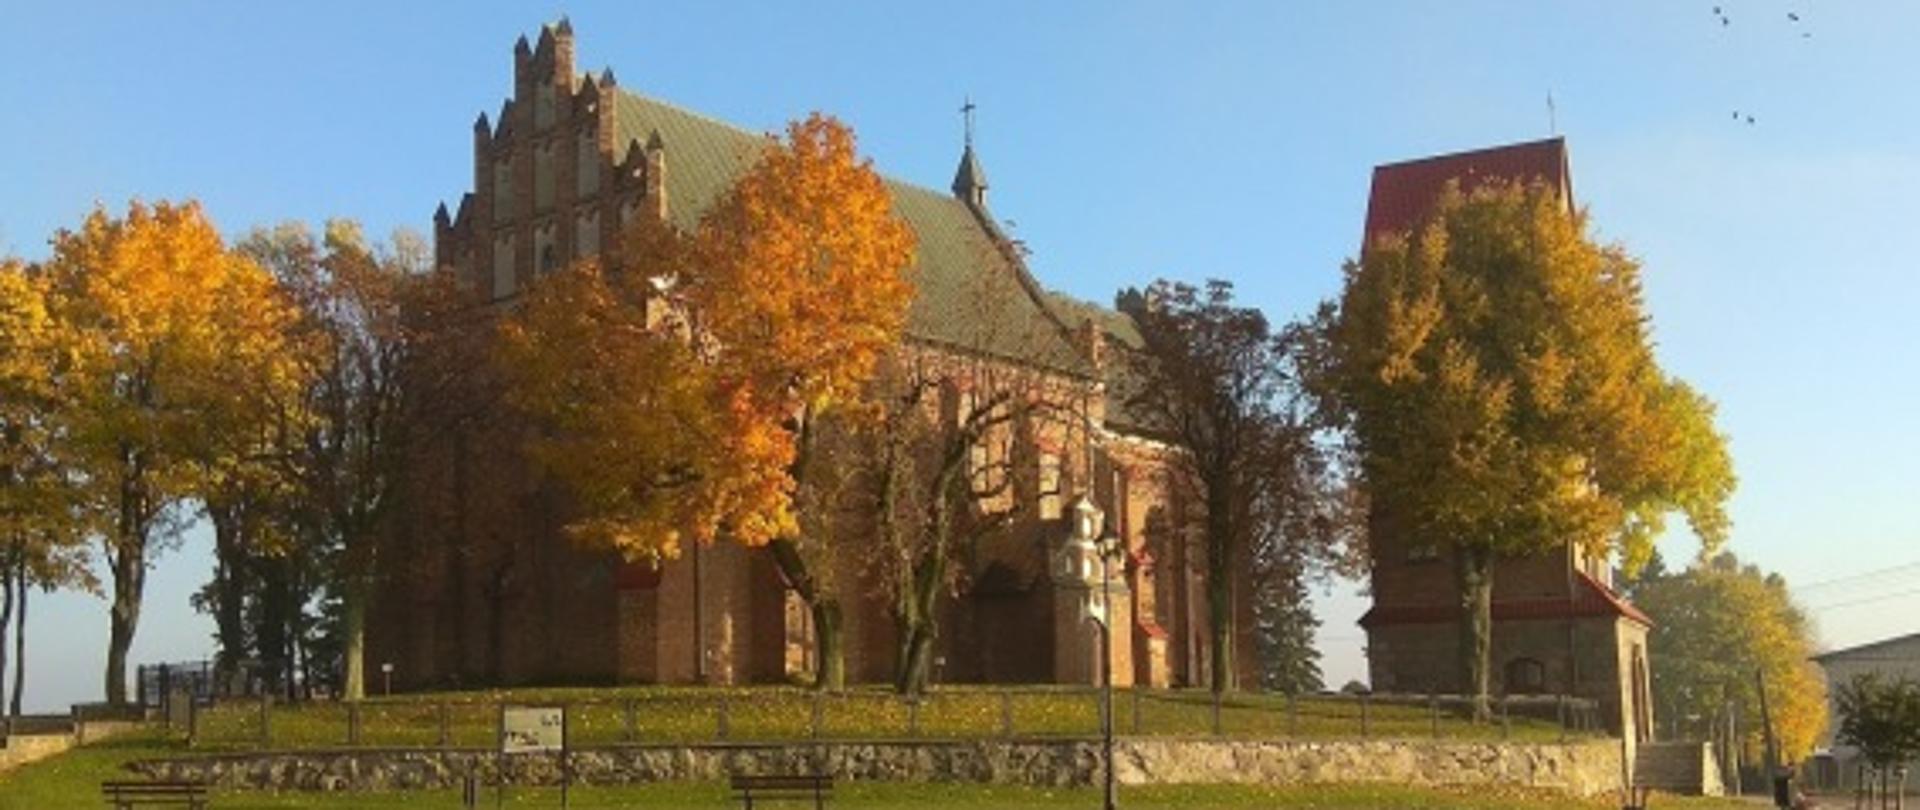 Zdjęcie przedstawia widok na kościół Parafii Rzymskokatolickiej pw. Św. Stanisława Biskupa Męczennika w Czernicach Borowych.